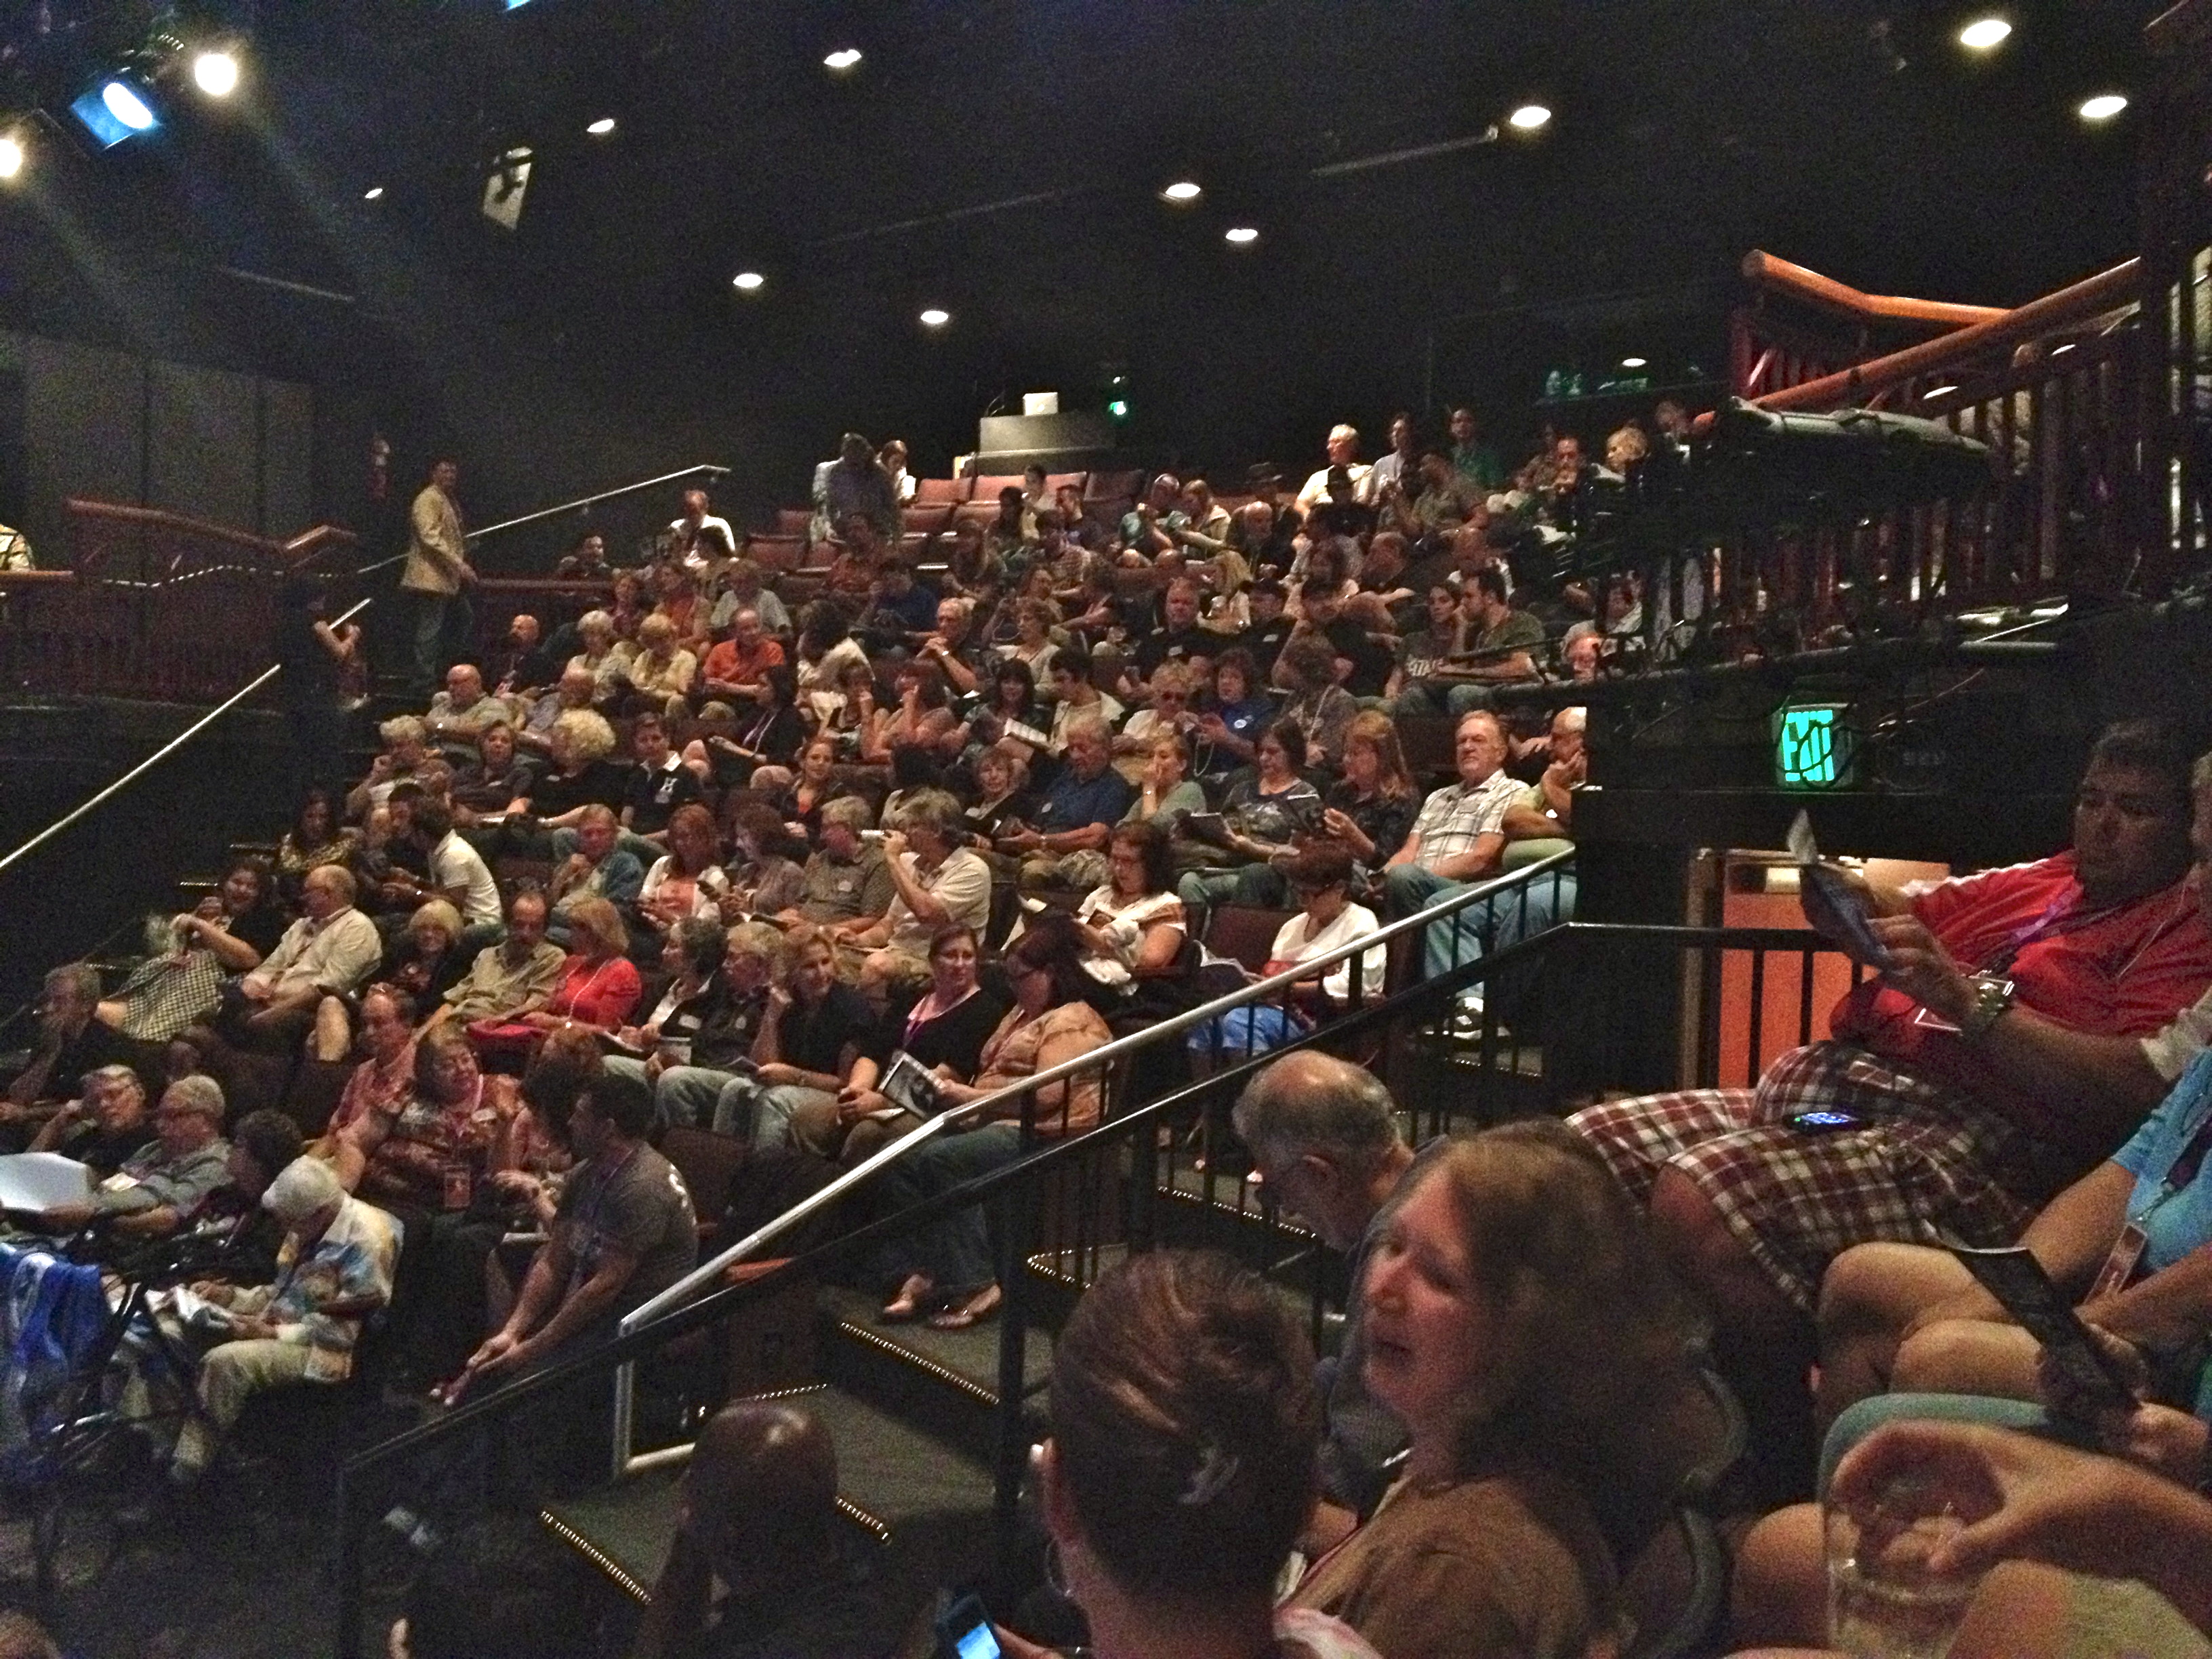 Fringe Festival audience